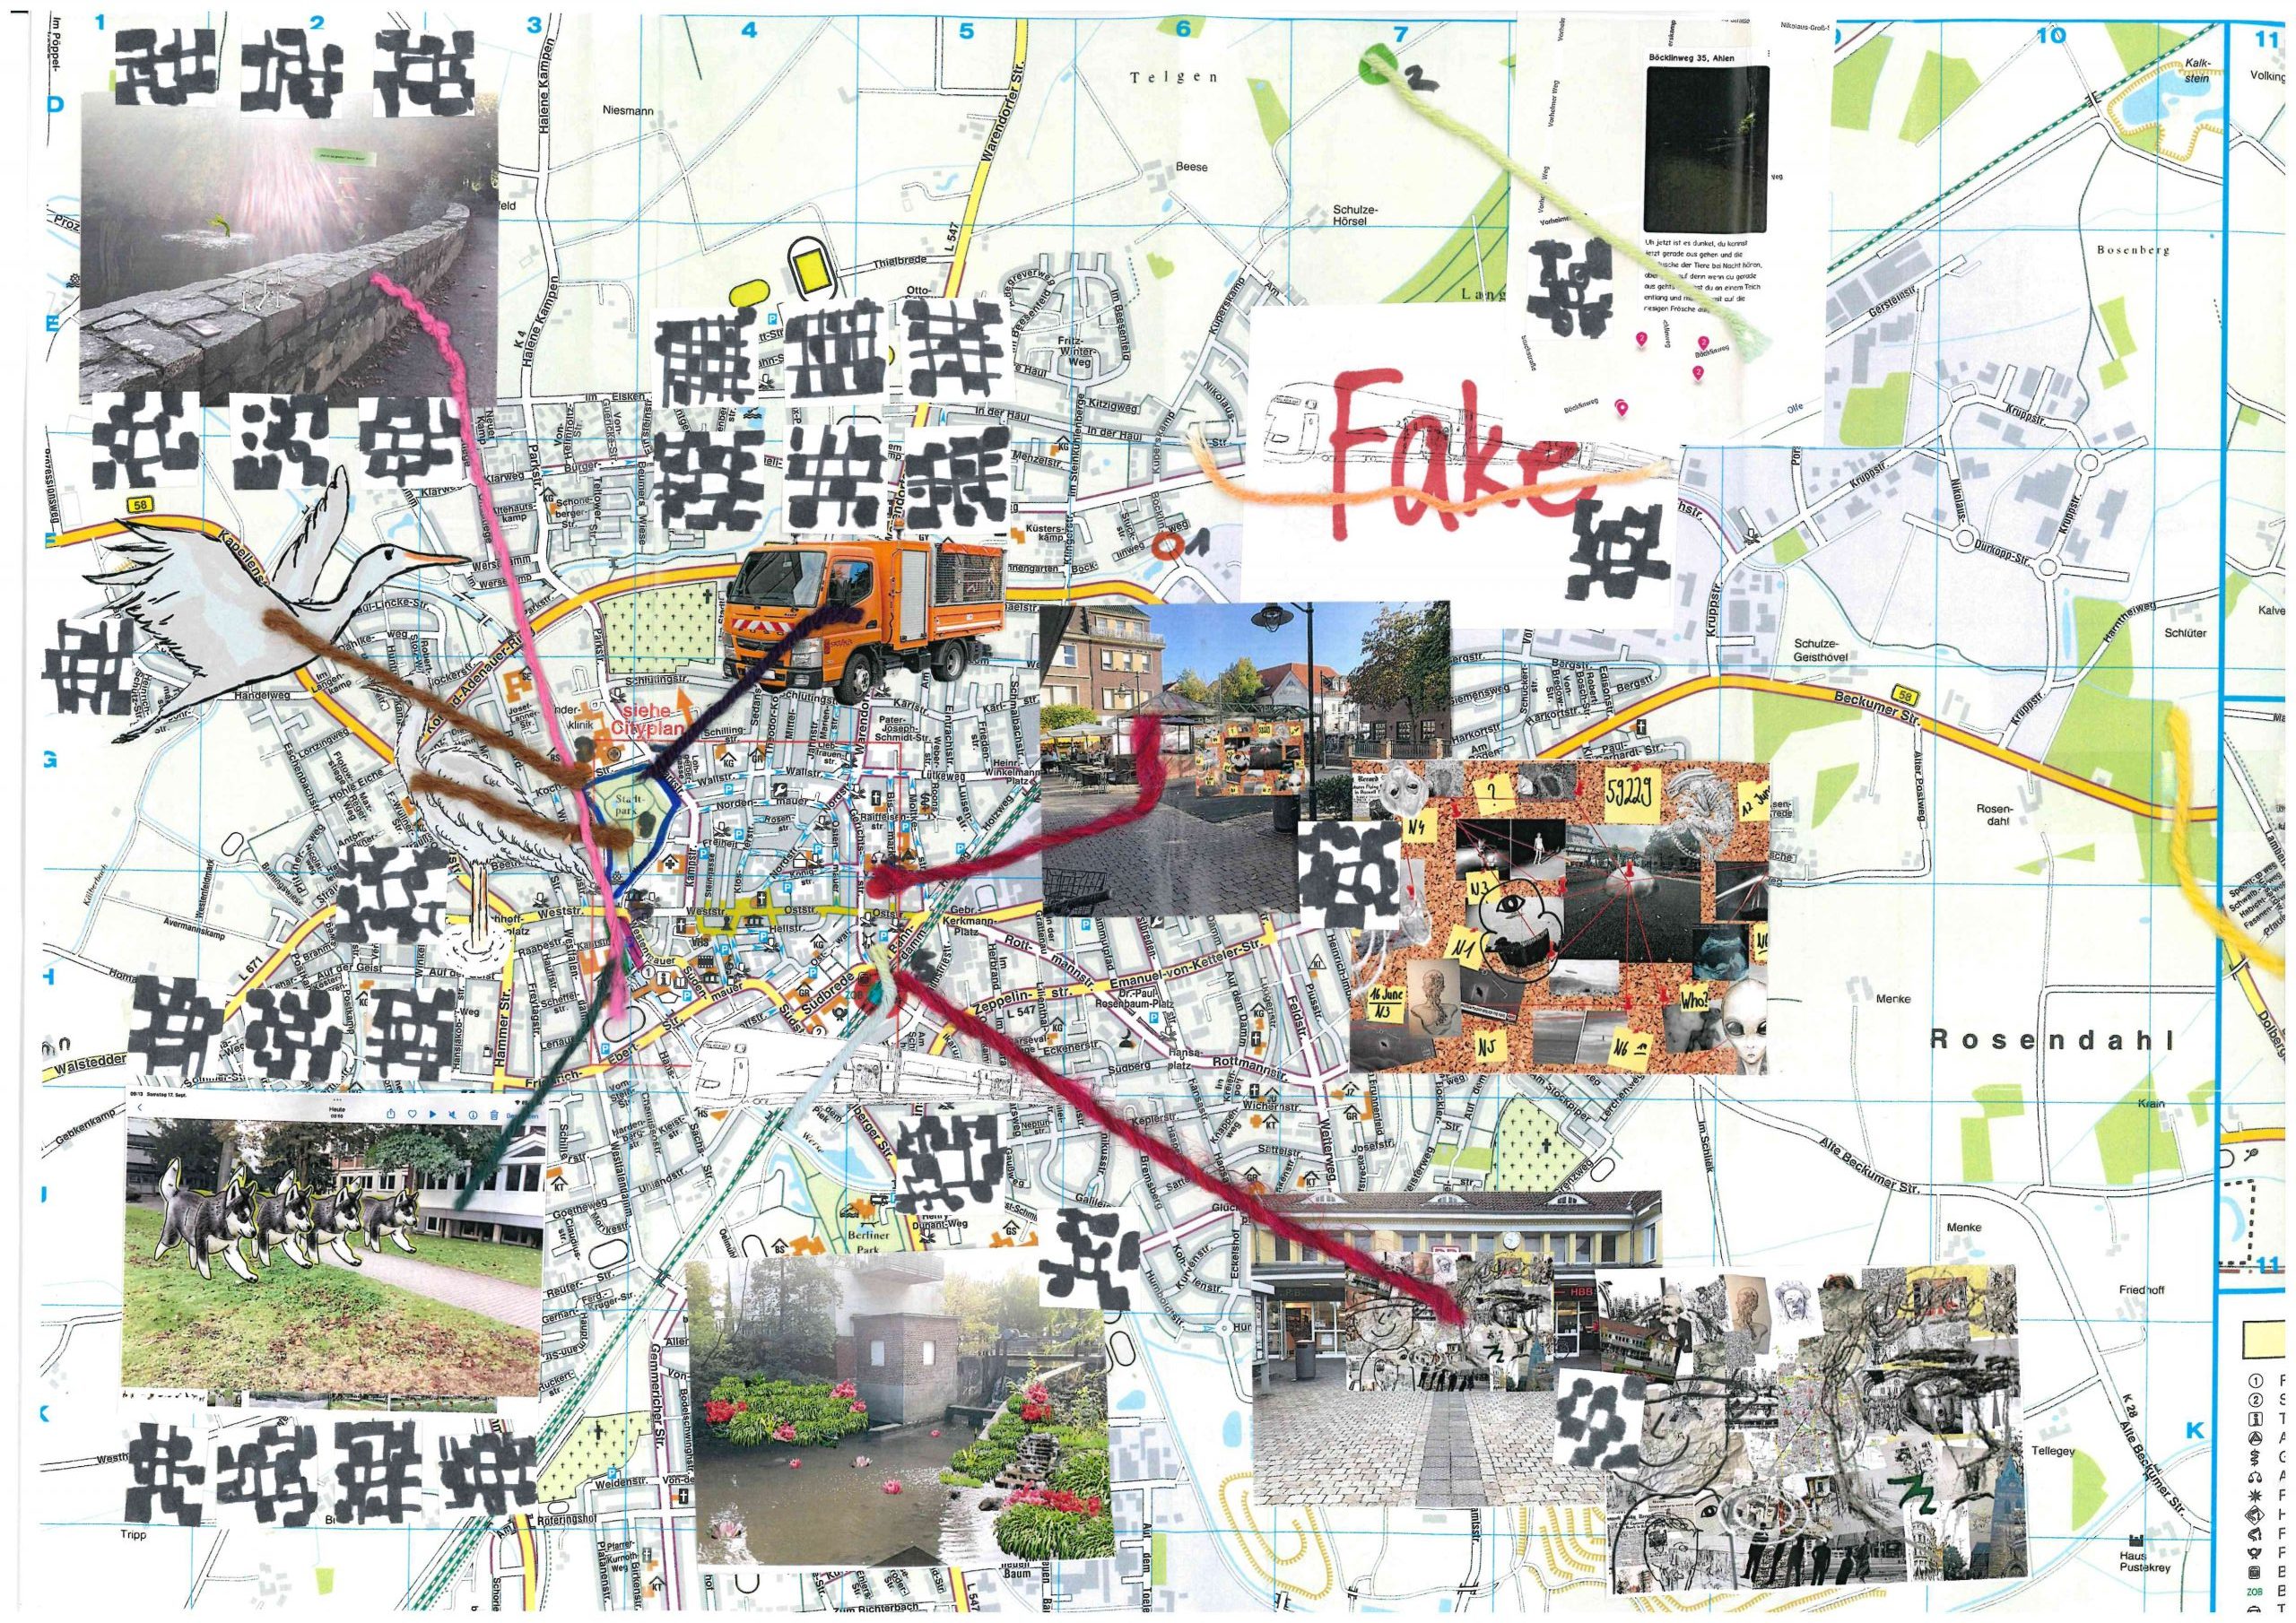 Ein Stadtplan von Ahlen. Darauf sind verschiedene Zeichnungen und Fotos eingefügt worden.